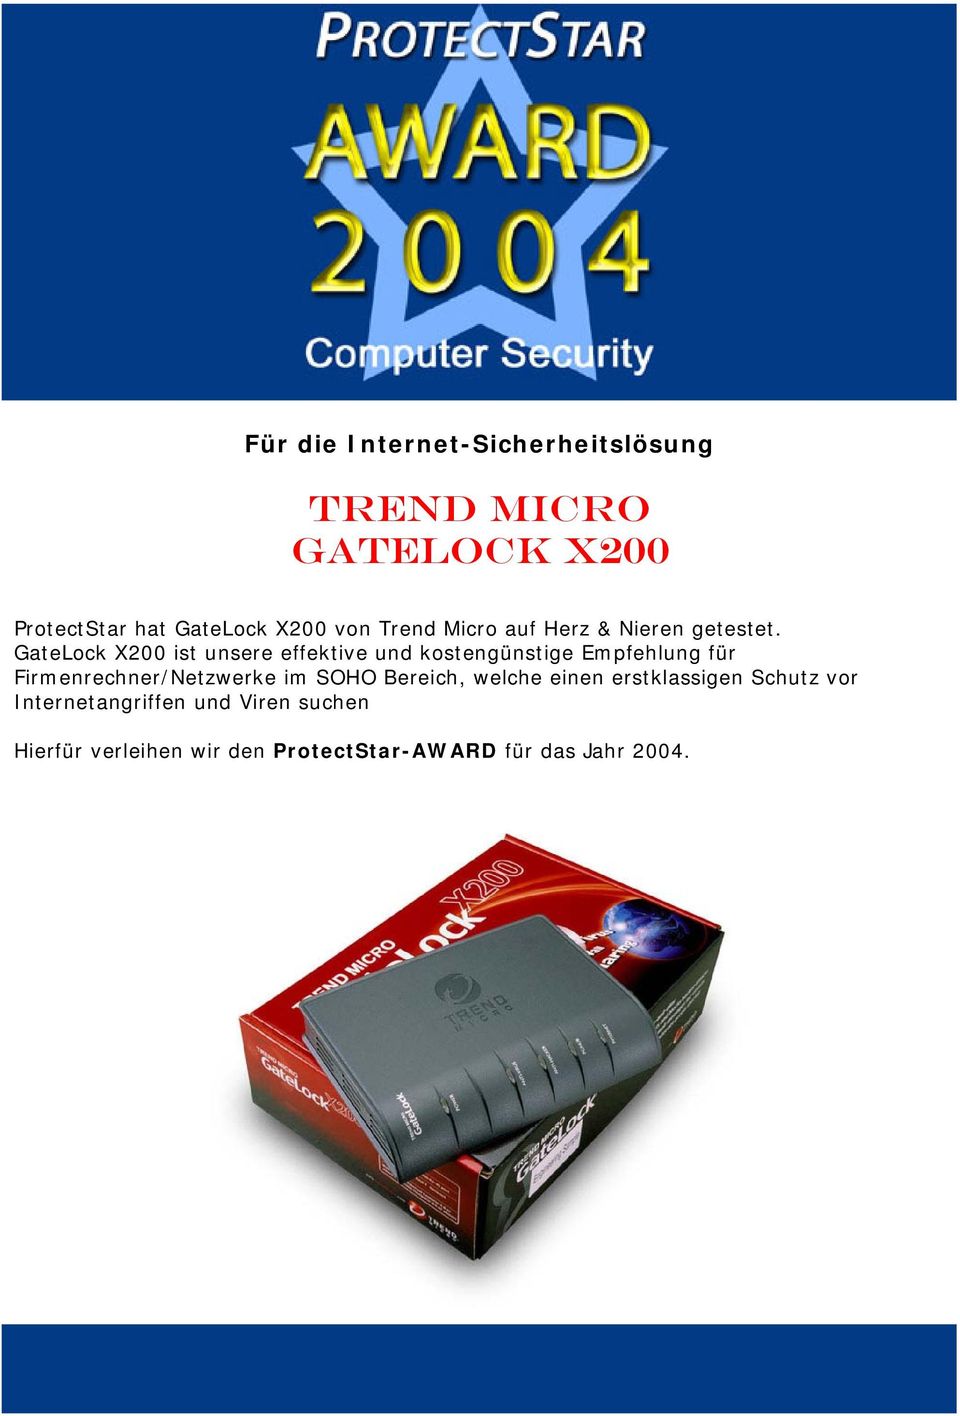 GateLock X200 ist unsere effektive und kostengünstige Empfehlung für Firmenrechner/Netzwerke